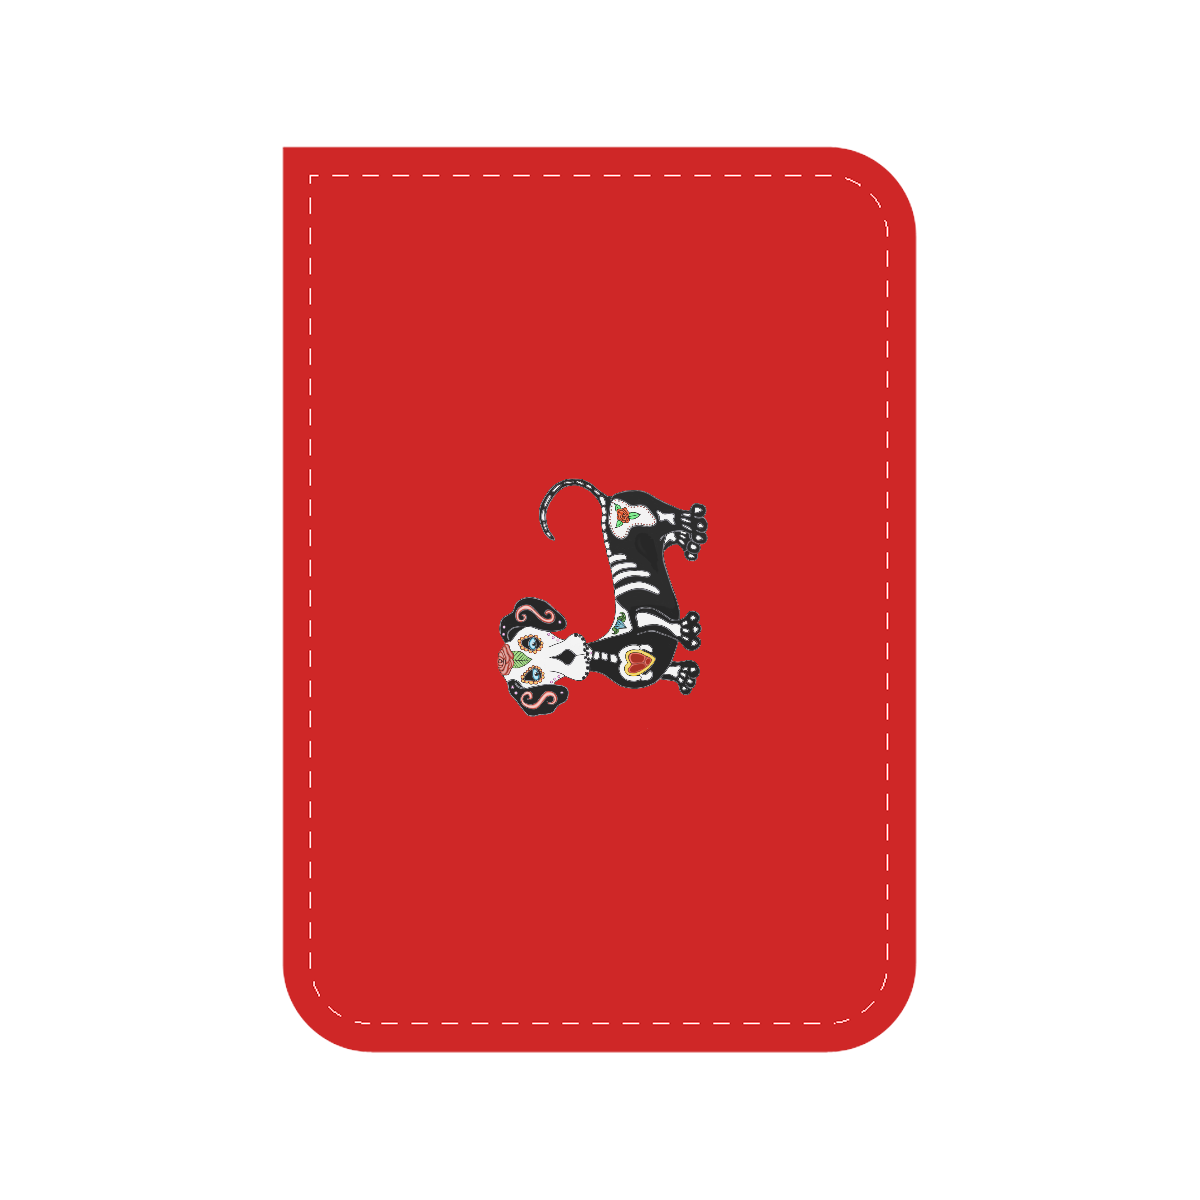 Dachshund Sugar Skull Red Car Seat Belt Cover 7''x10''